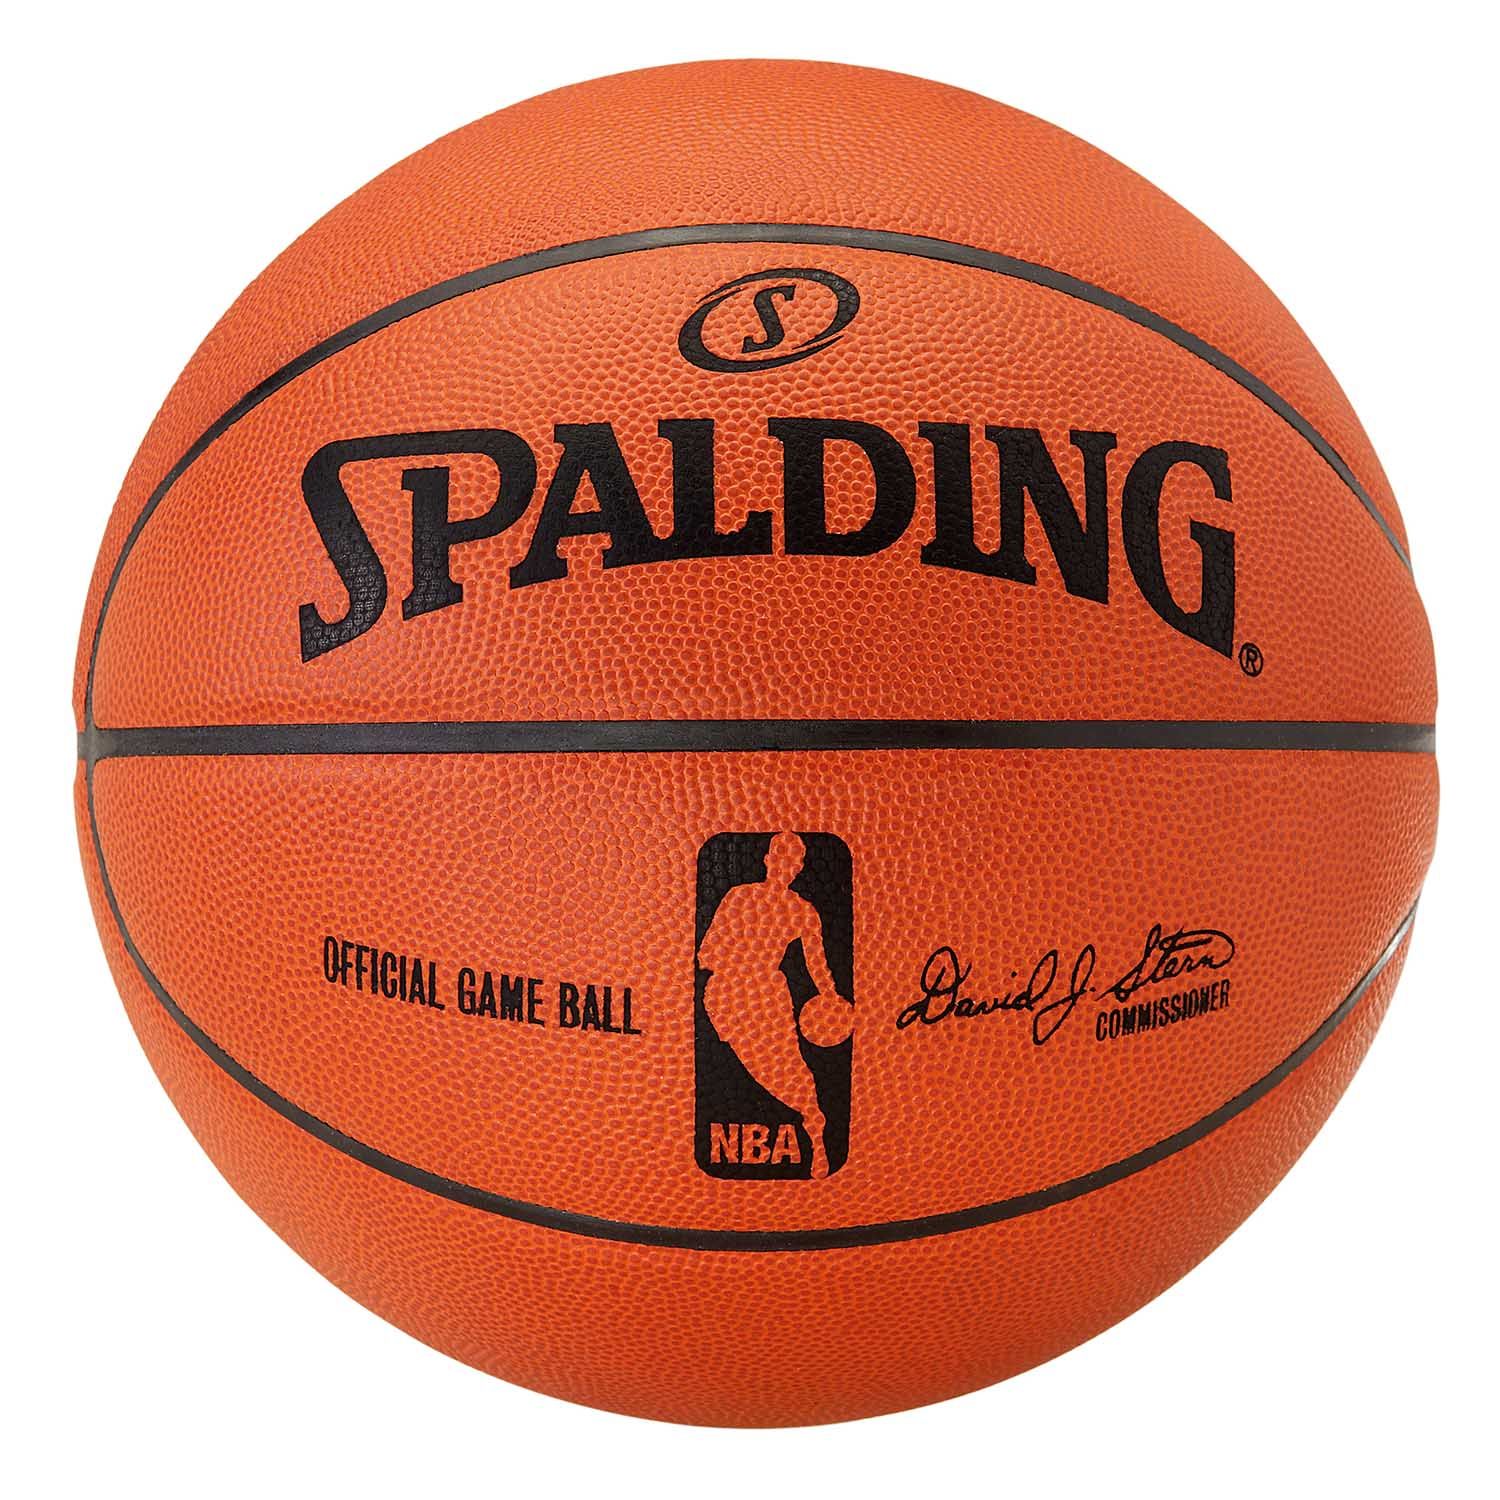 Spalding Game Ball Emblem Wallpaper